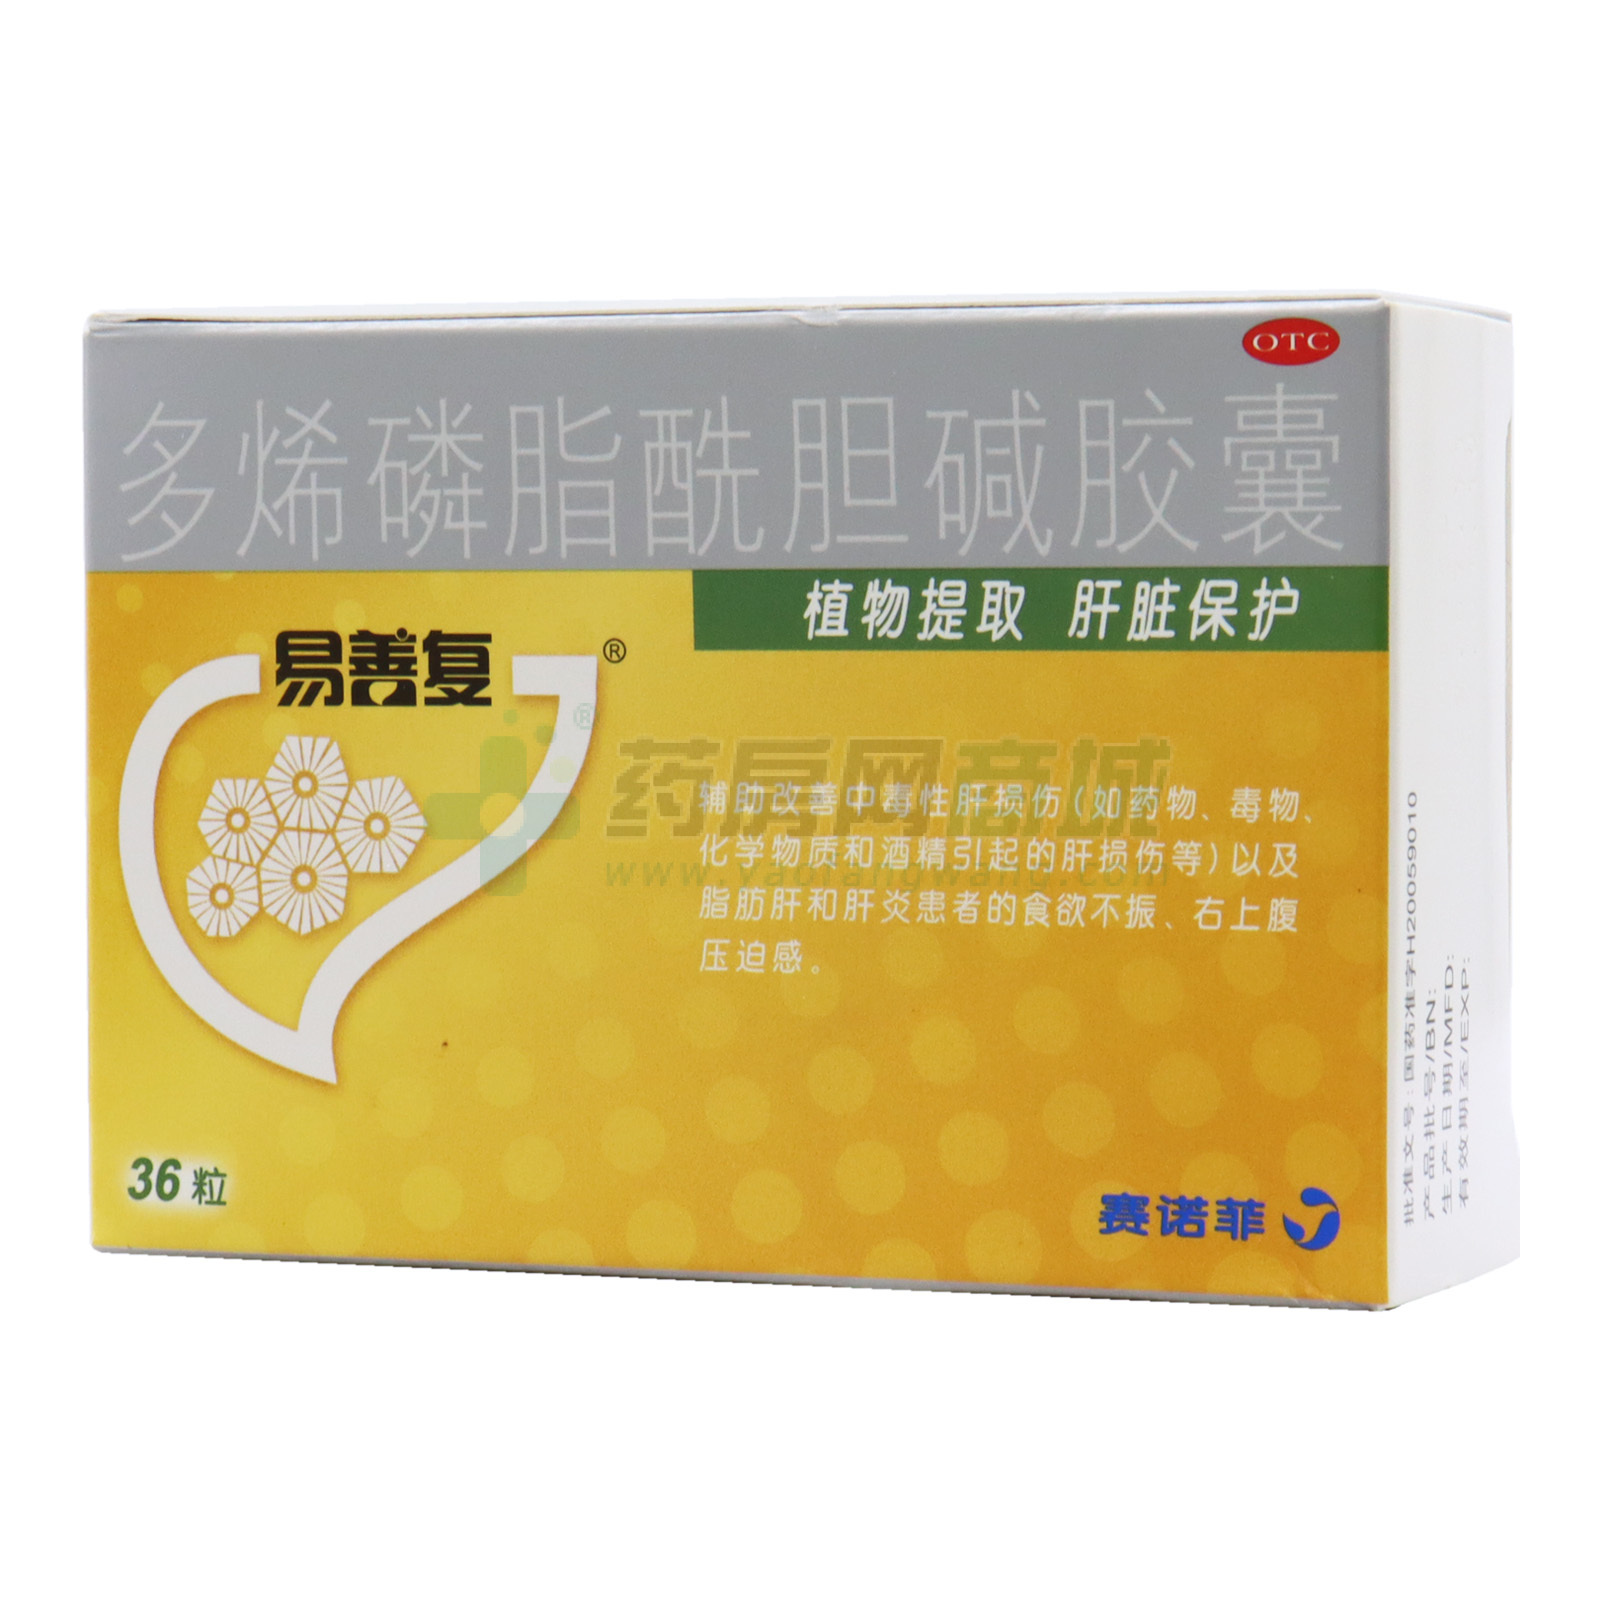 易善复 多烯磷脂酰胆碱胶囊 - 赛诺菲(北京)制药有限公司